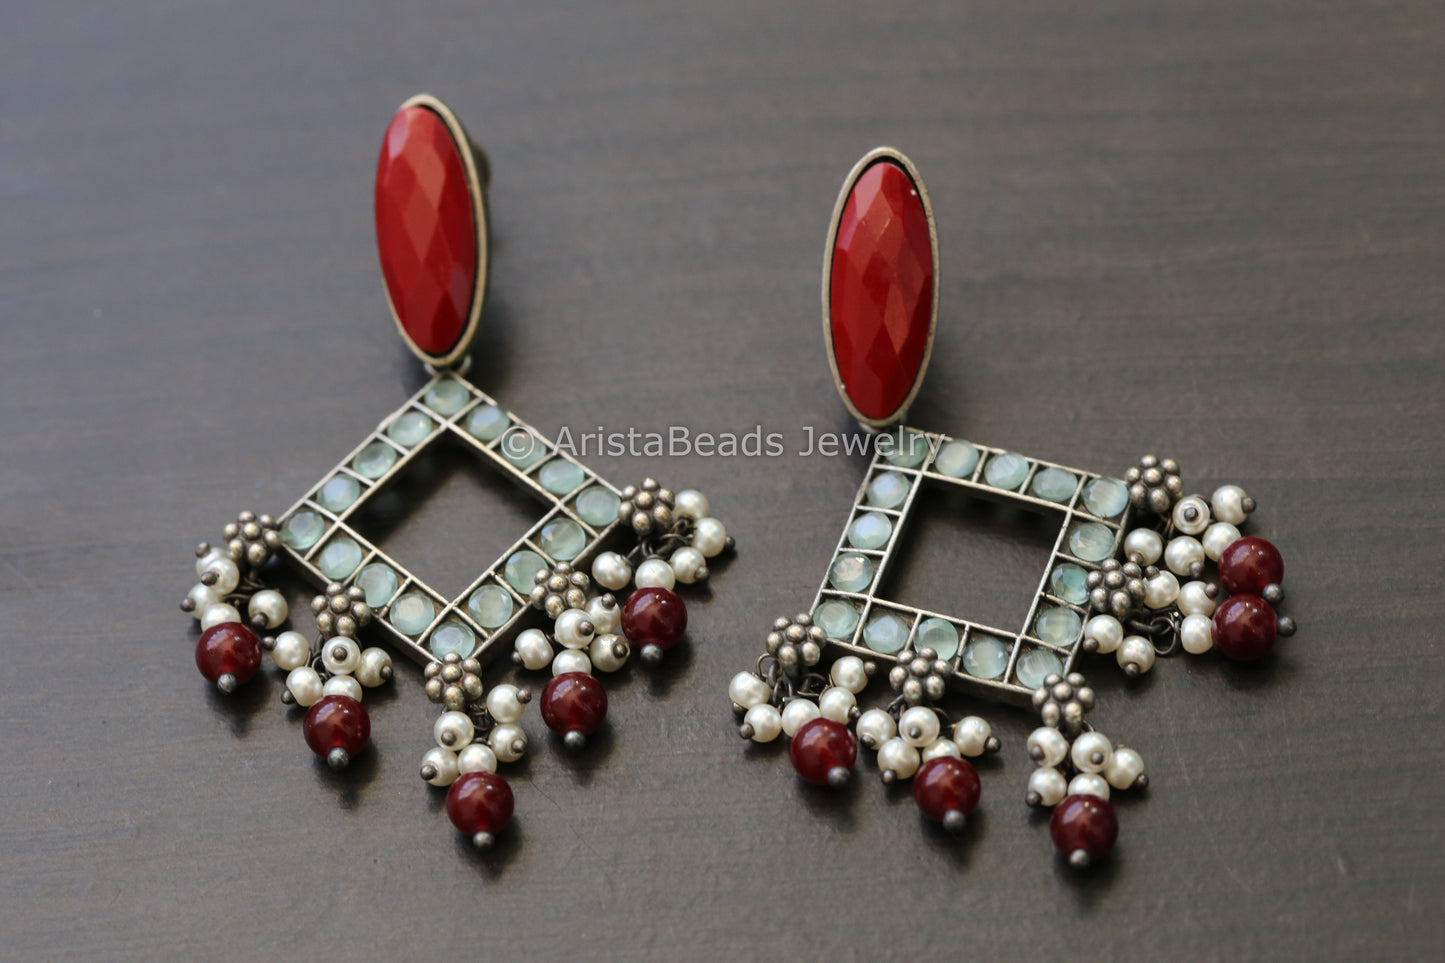 Monalisa Stone Earrings - Red